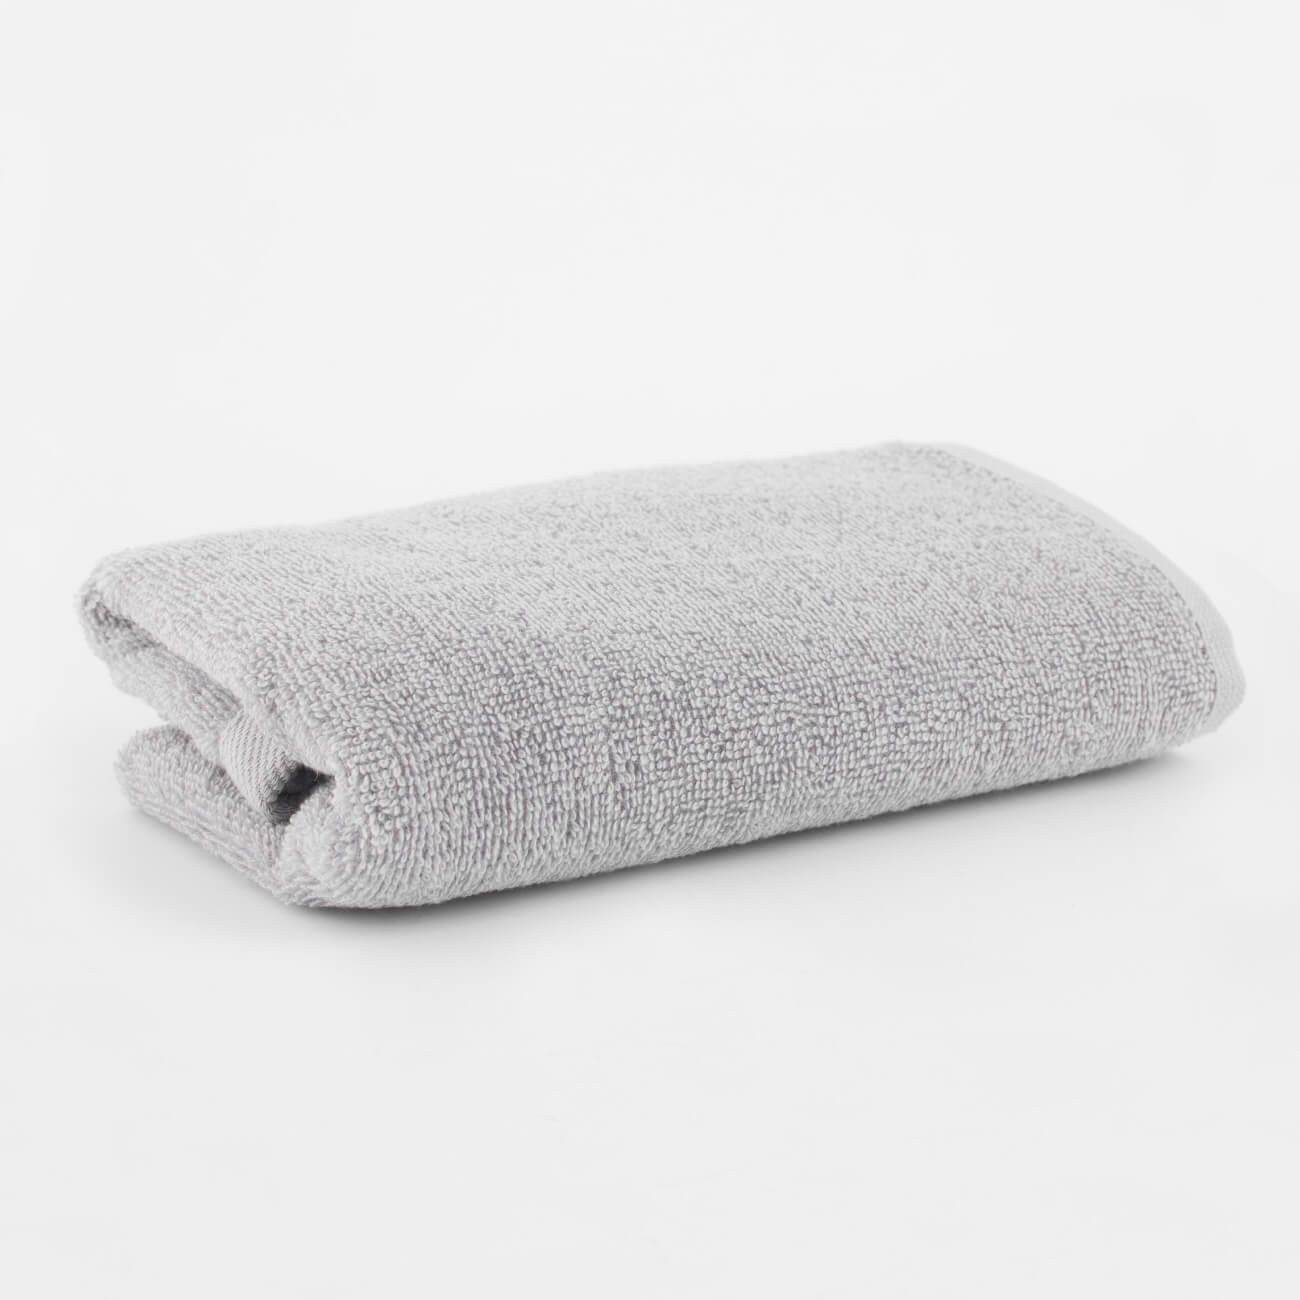 Полотенце, 50х90 см, хлопок, светло-серое, Wellness ayrton 160 пляжное полотенце